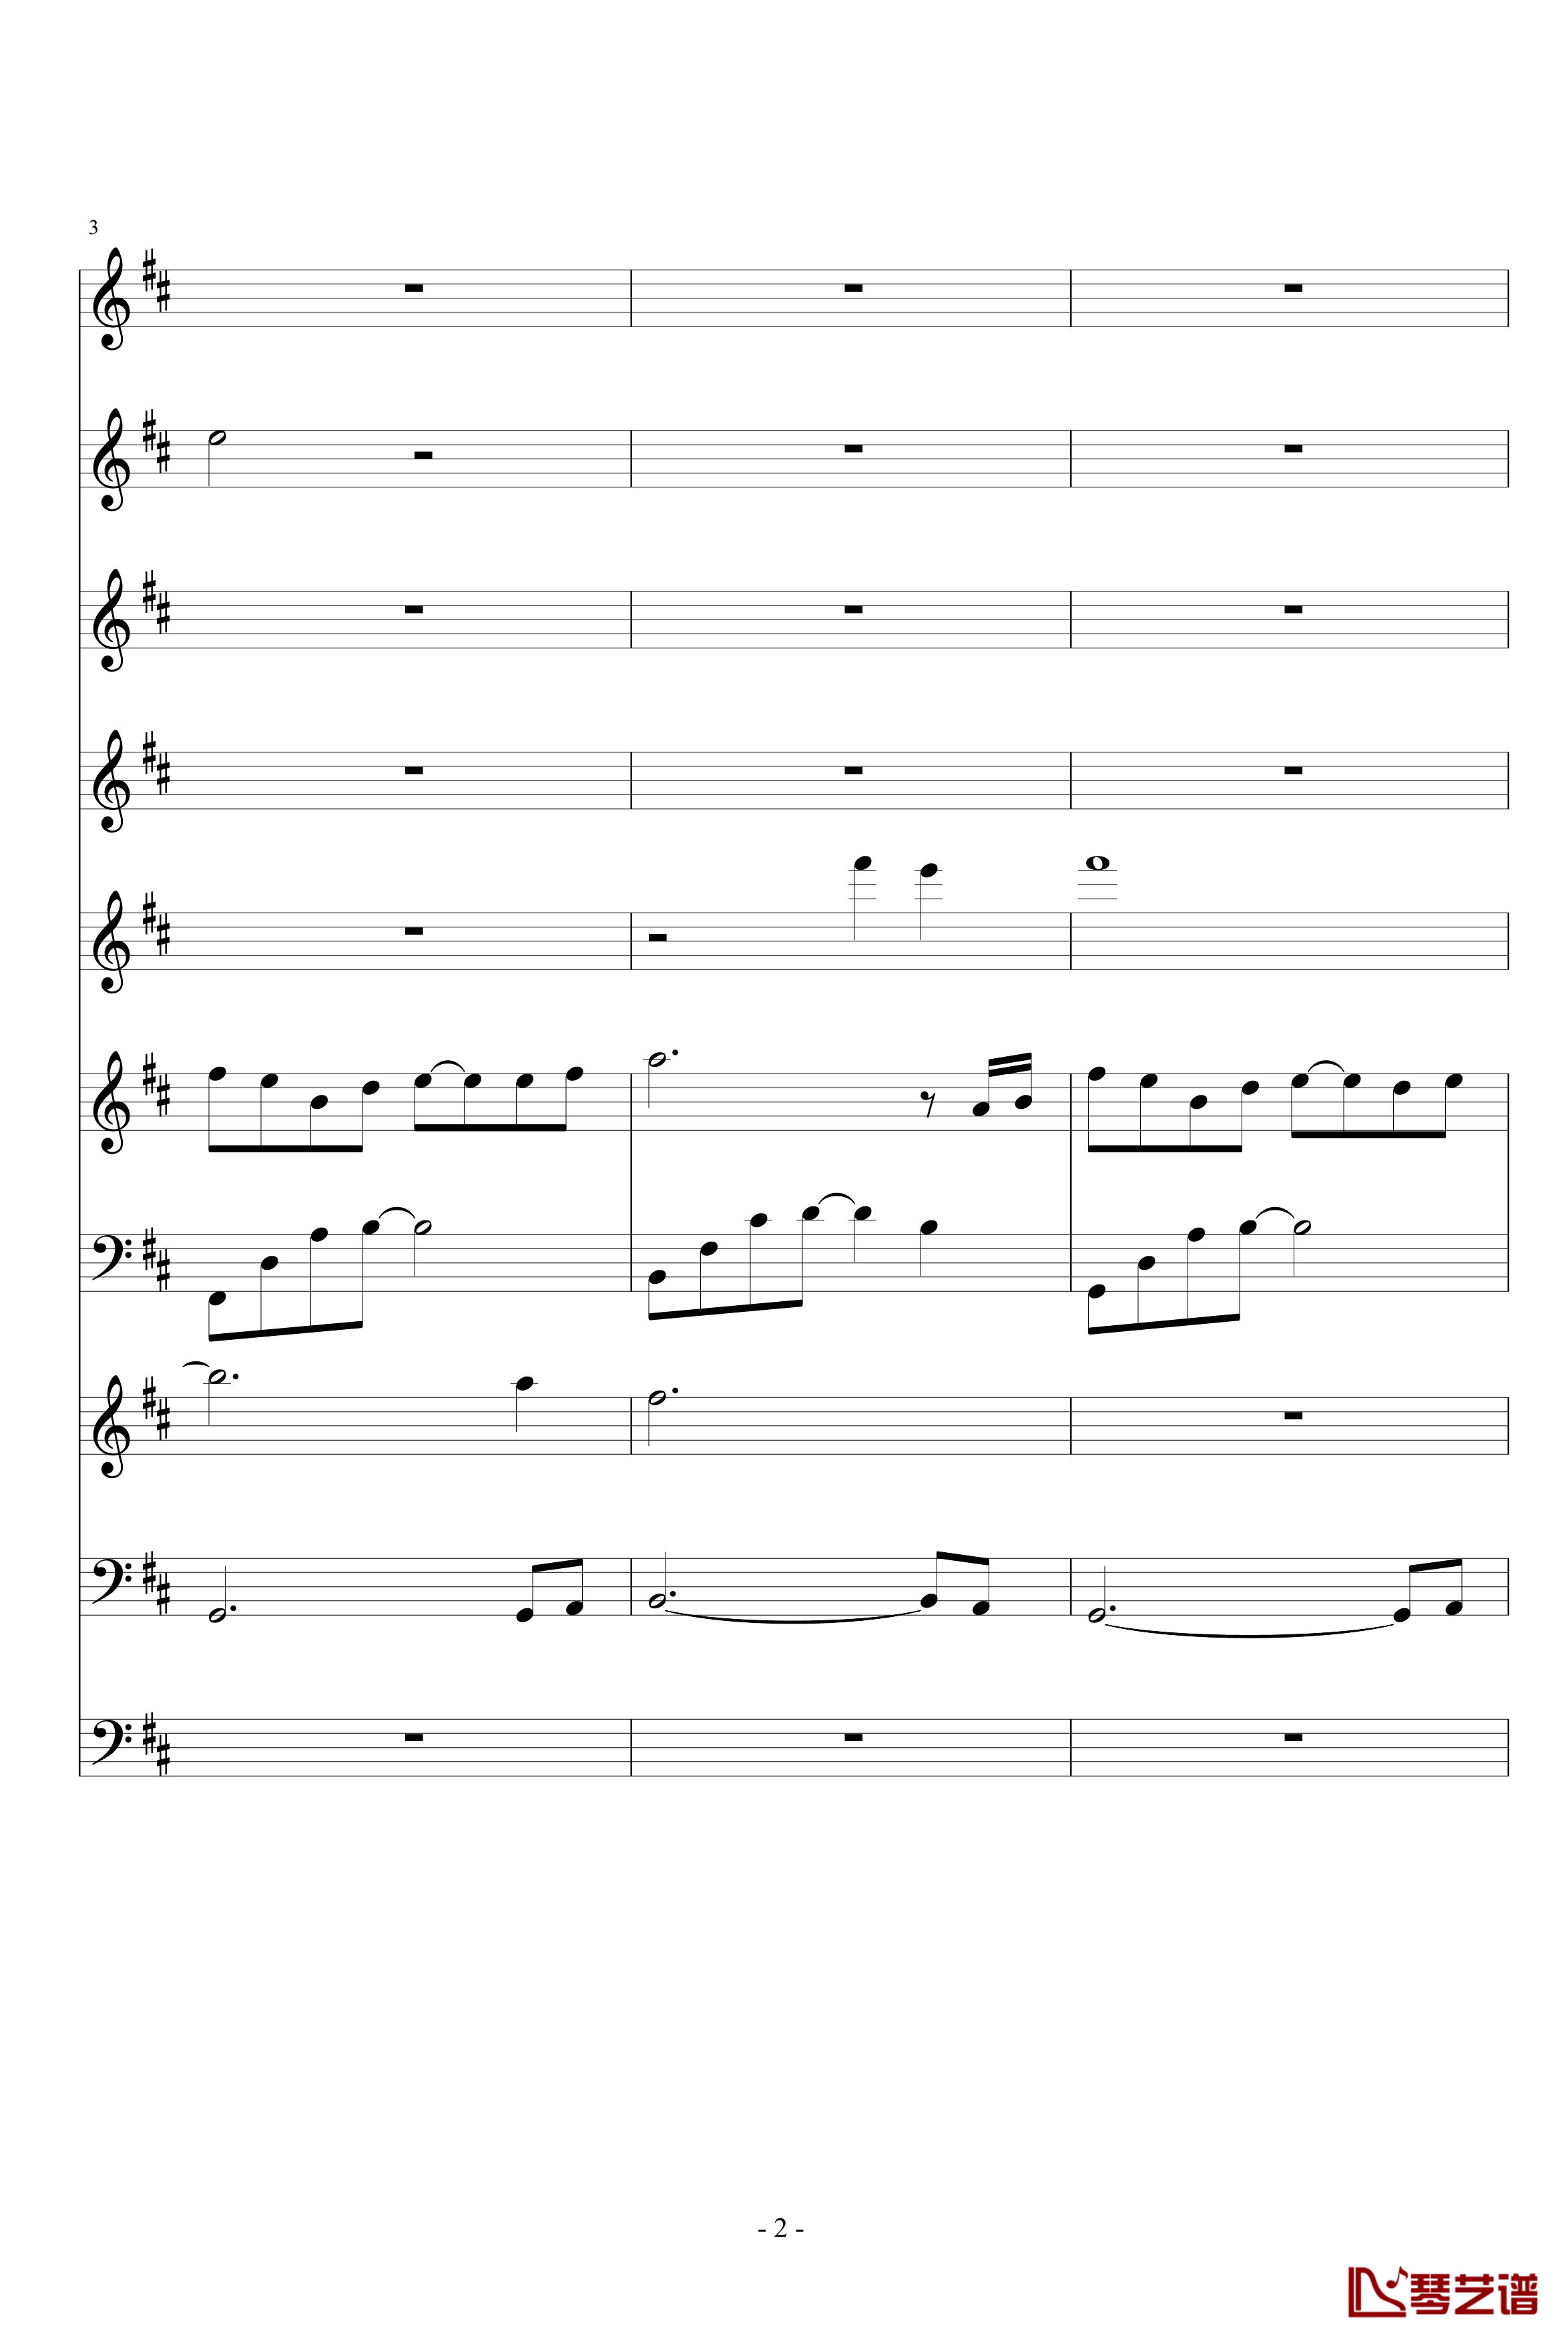 月落暗香坡钢琴谱-巴乌、笛子、琵琶、二胡、古筝-peterkingily2